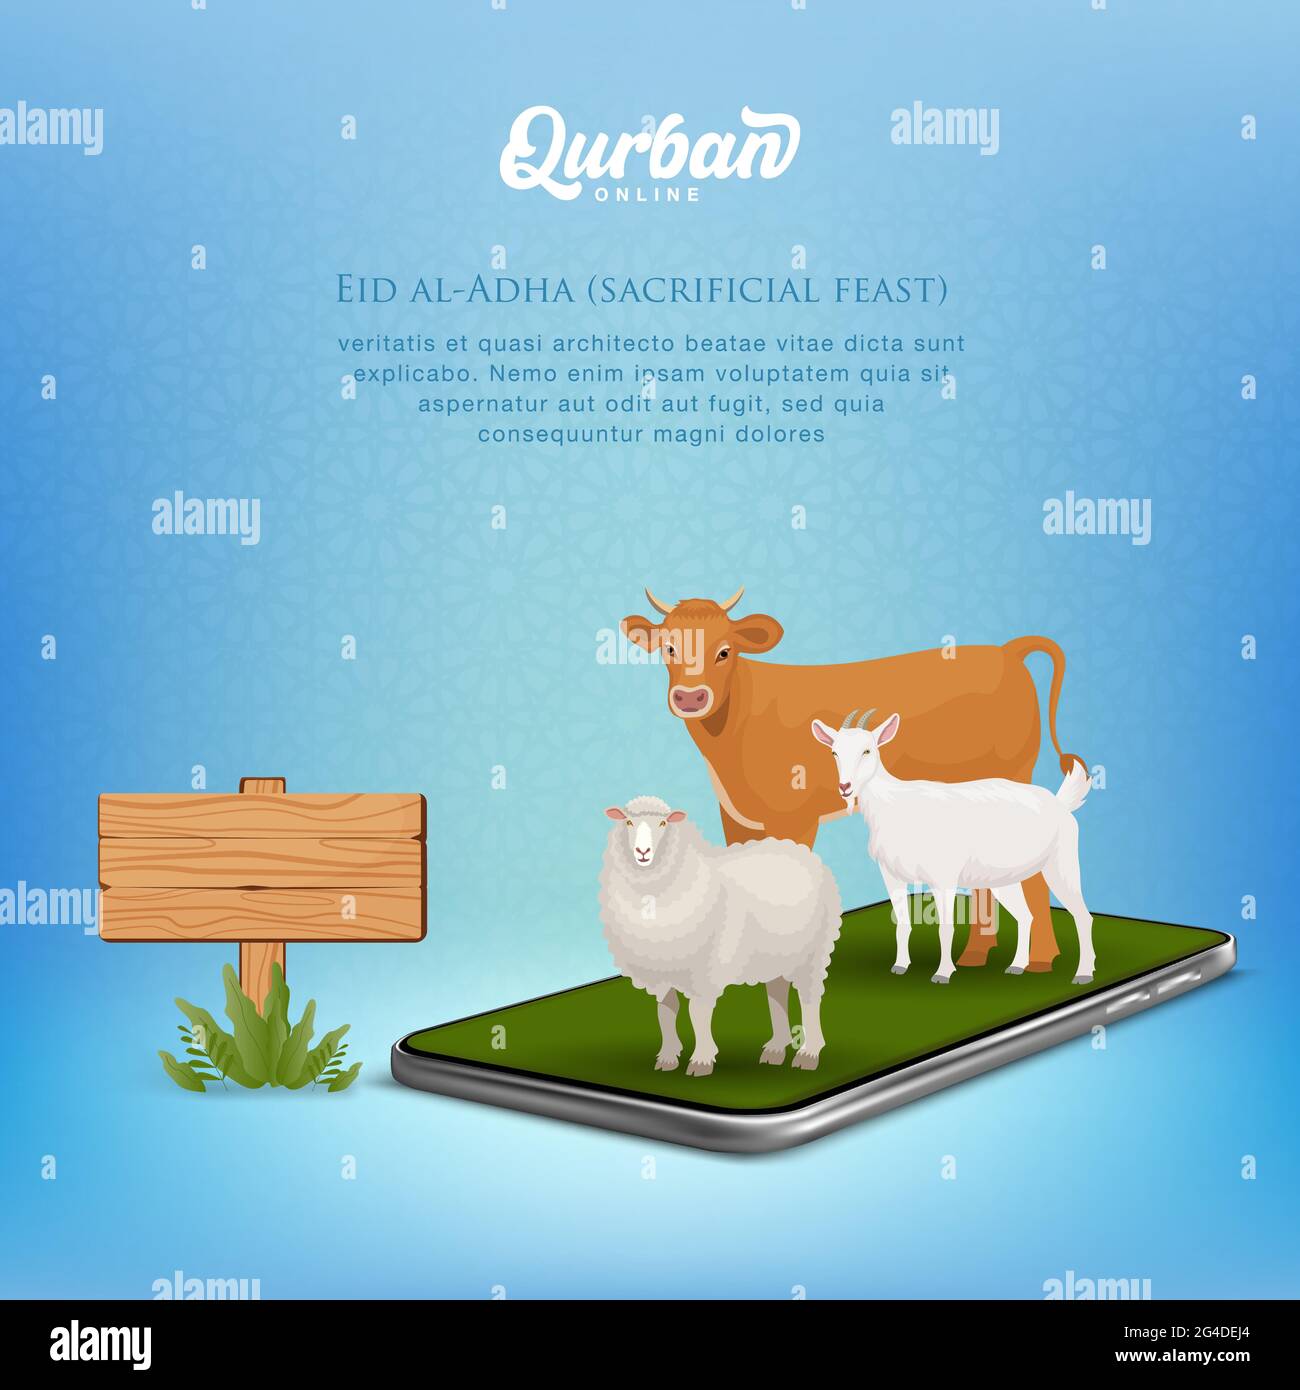 Concept d'application mobile QUrban en ligne. Illustration d'un smartphone avec animal sacrificiel pour Eid al Adha Illustration de Vecteur